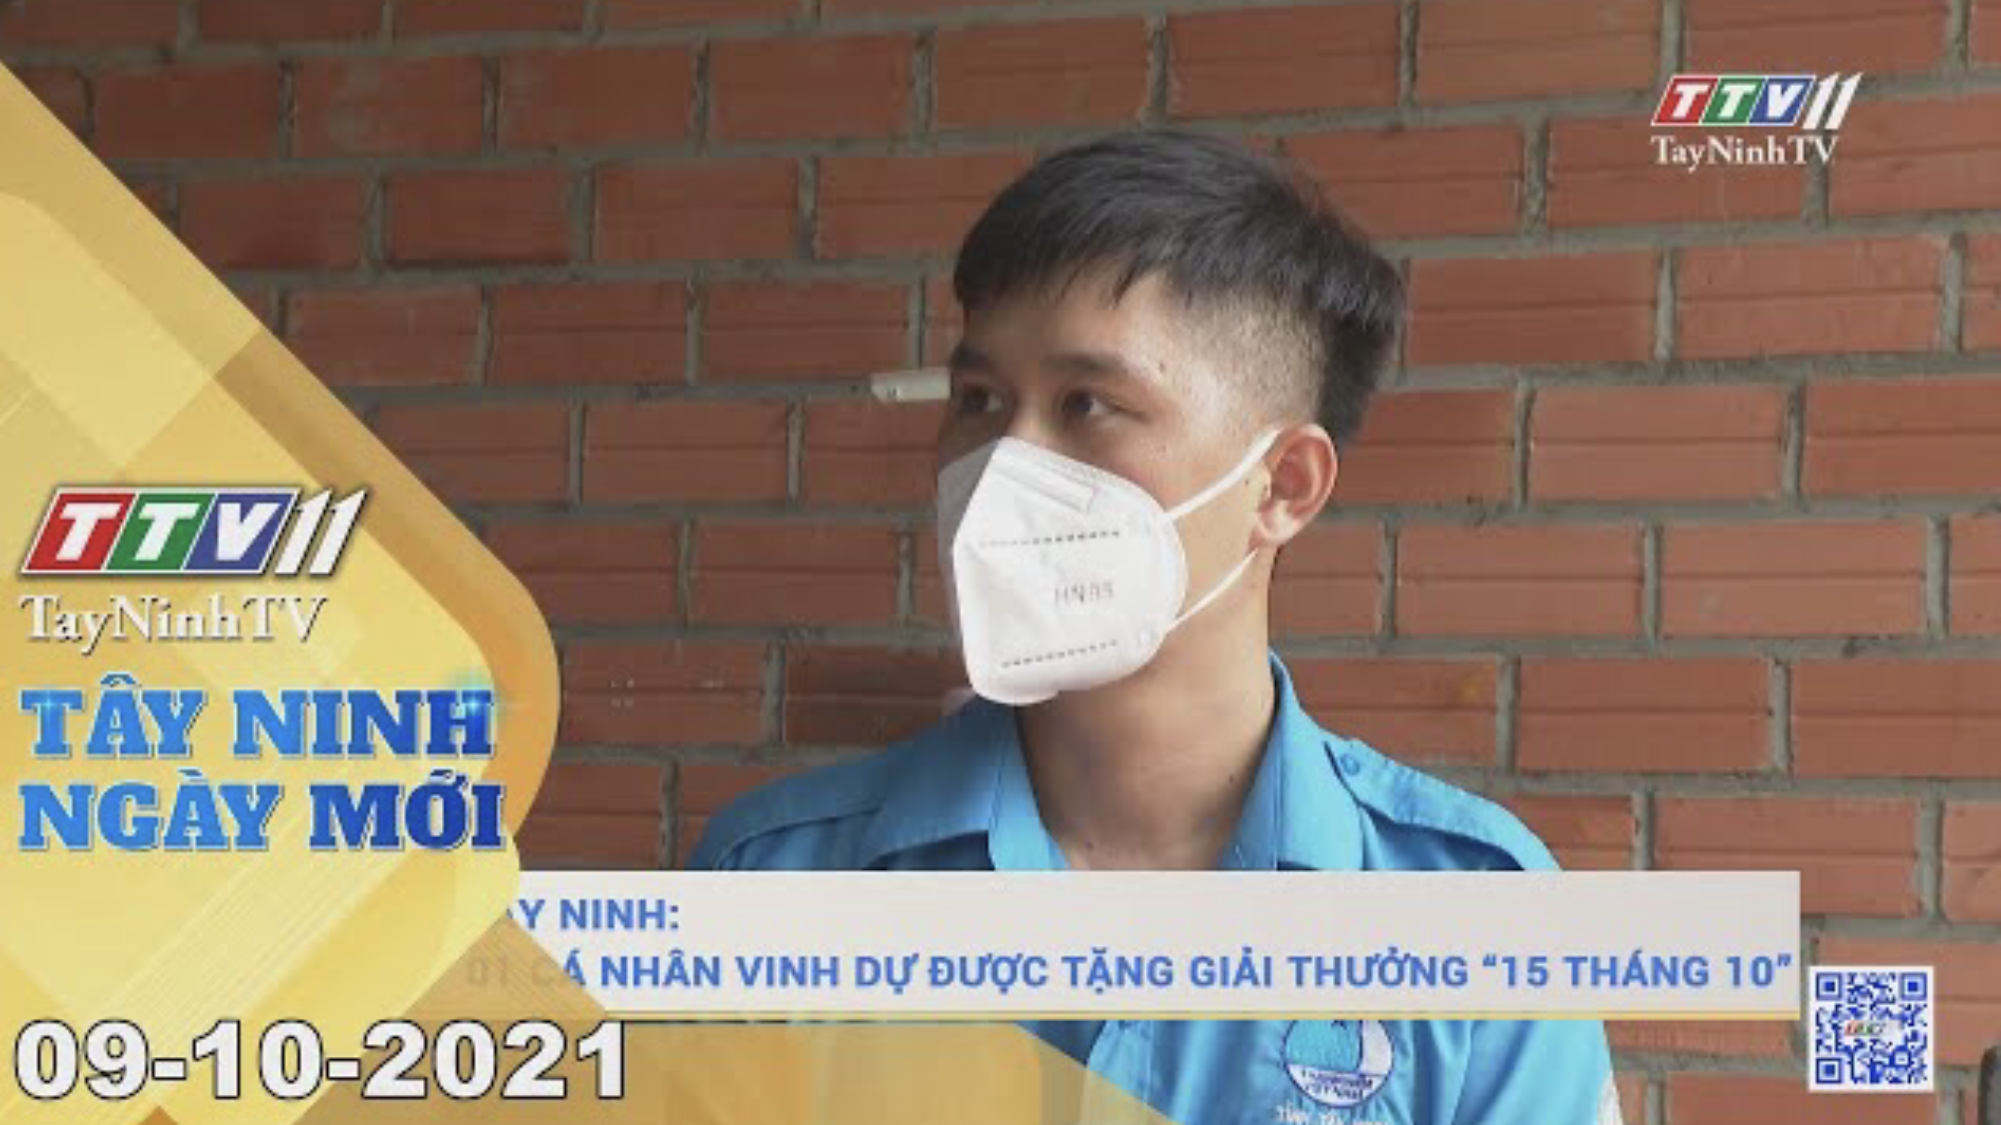 TÂY NINH NGÀY MỚI 09/10/2021 | Tin tức hôm nay | TayNinhTV